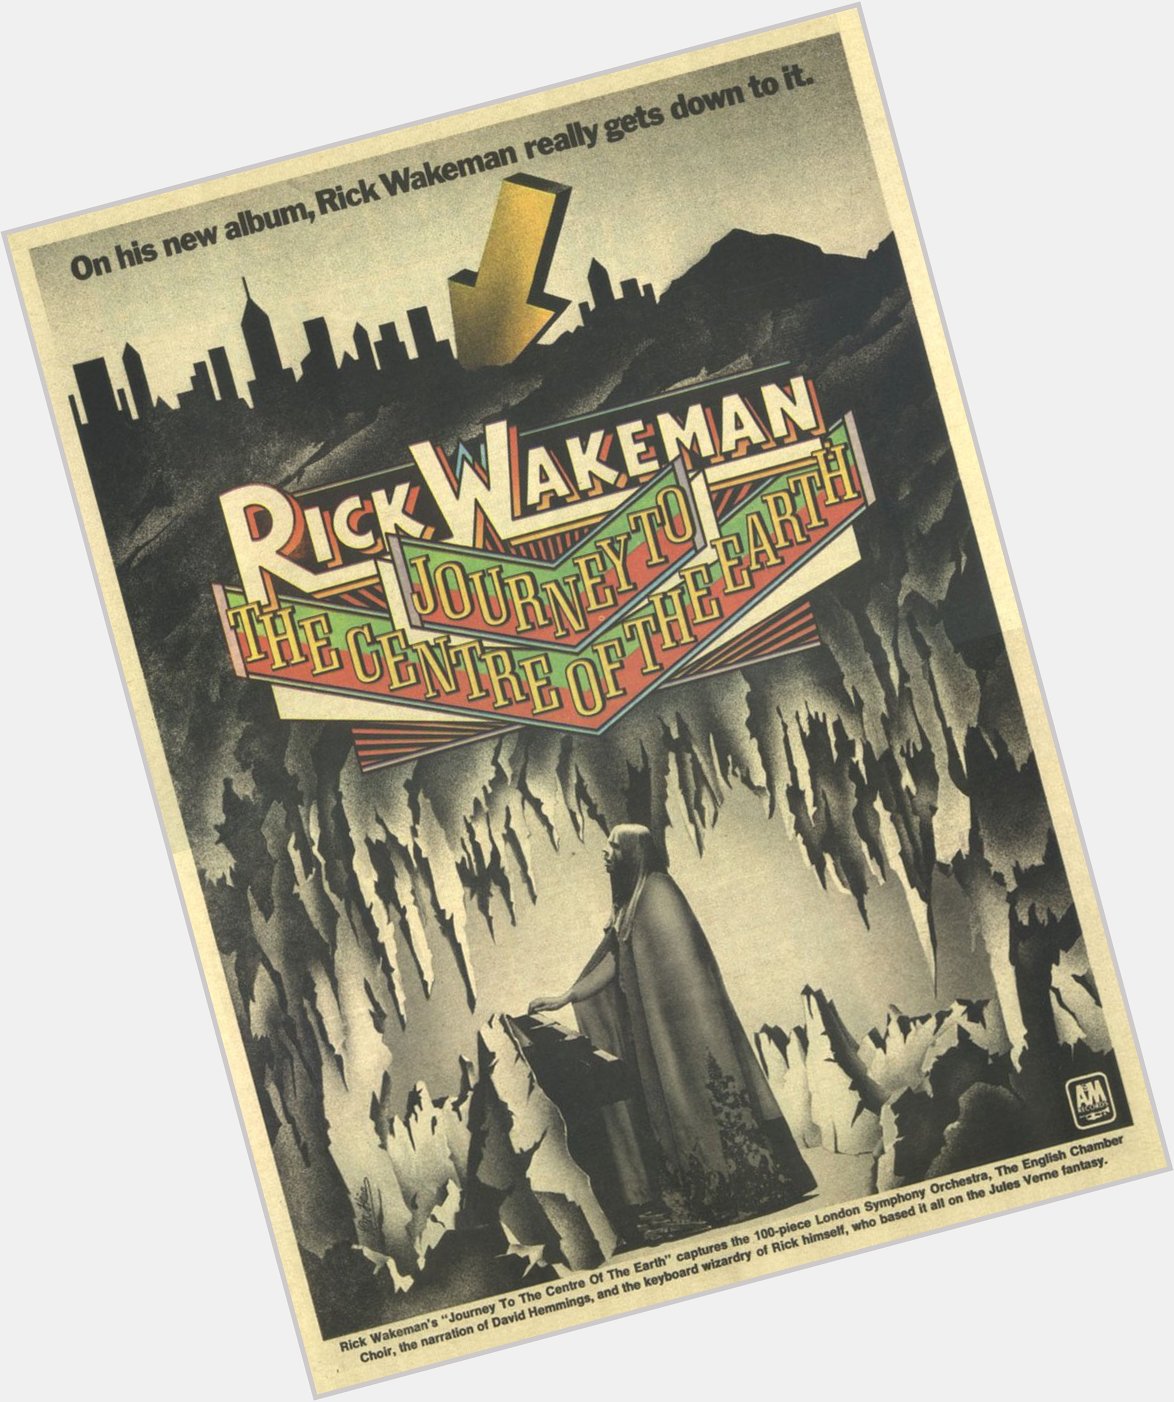 Happy birthday, Rick Wakeman:  